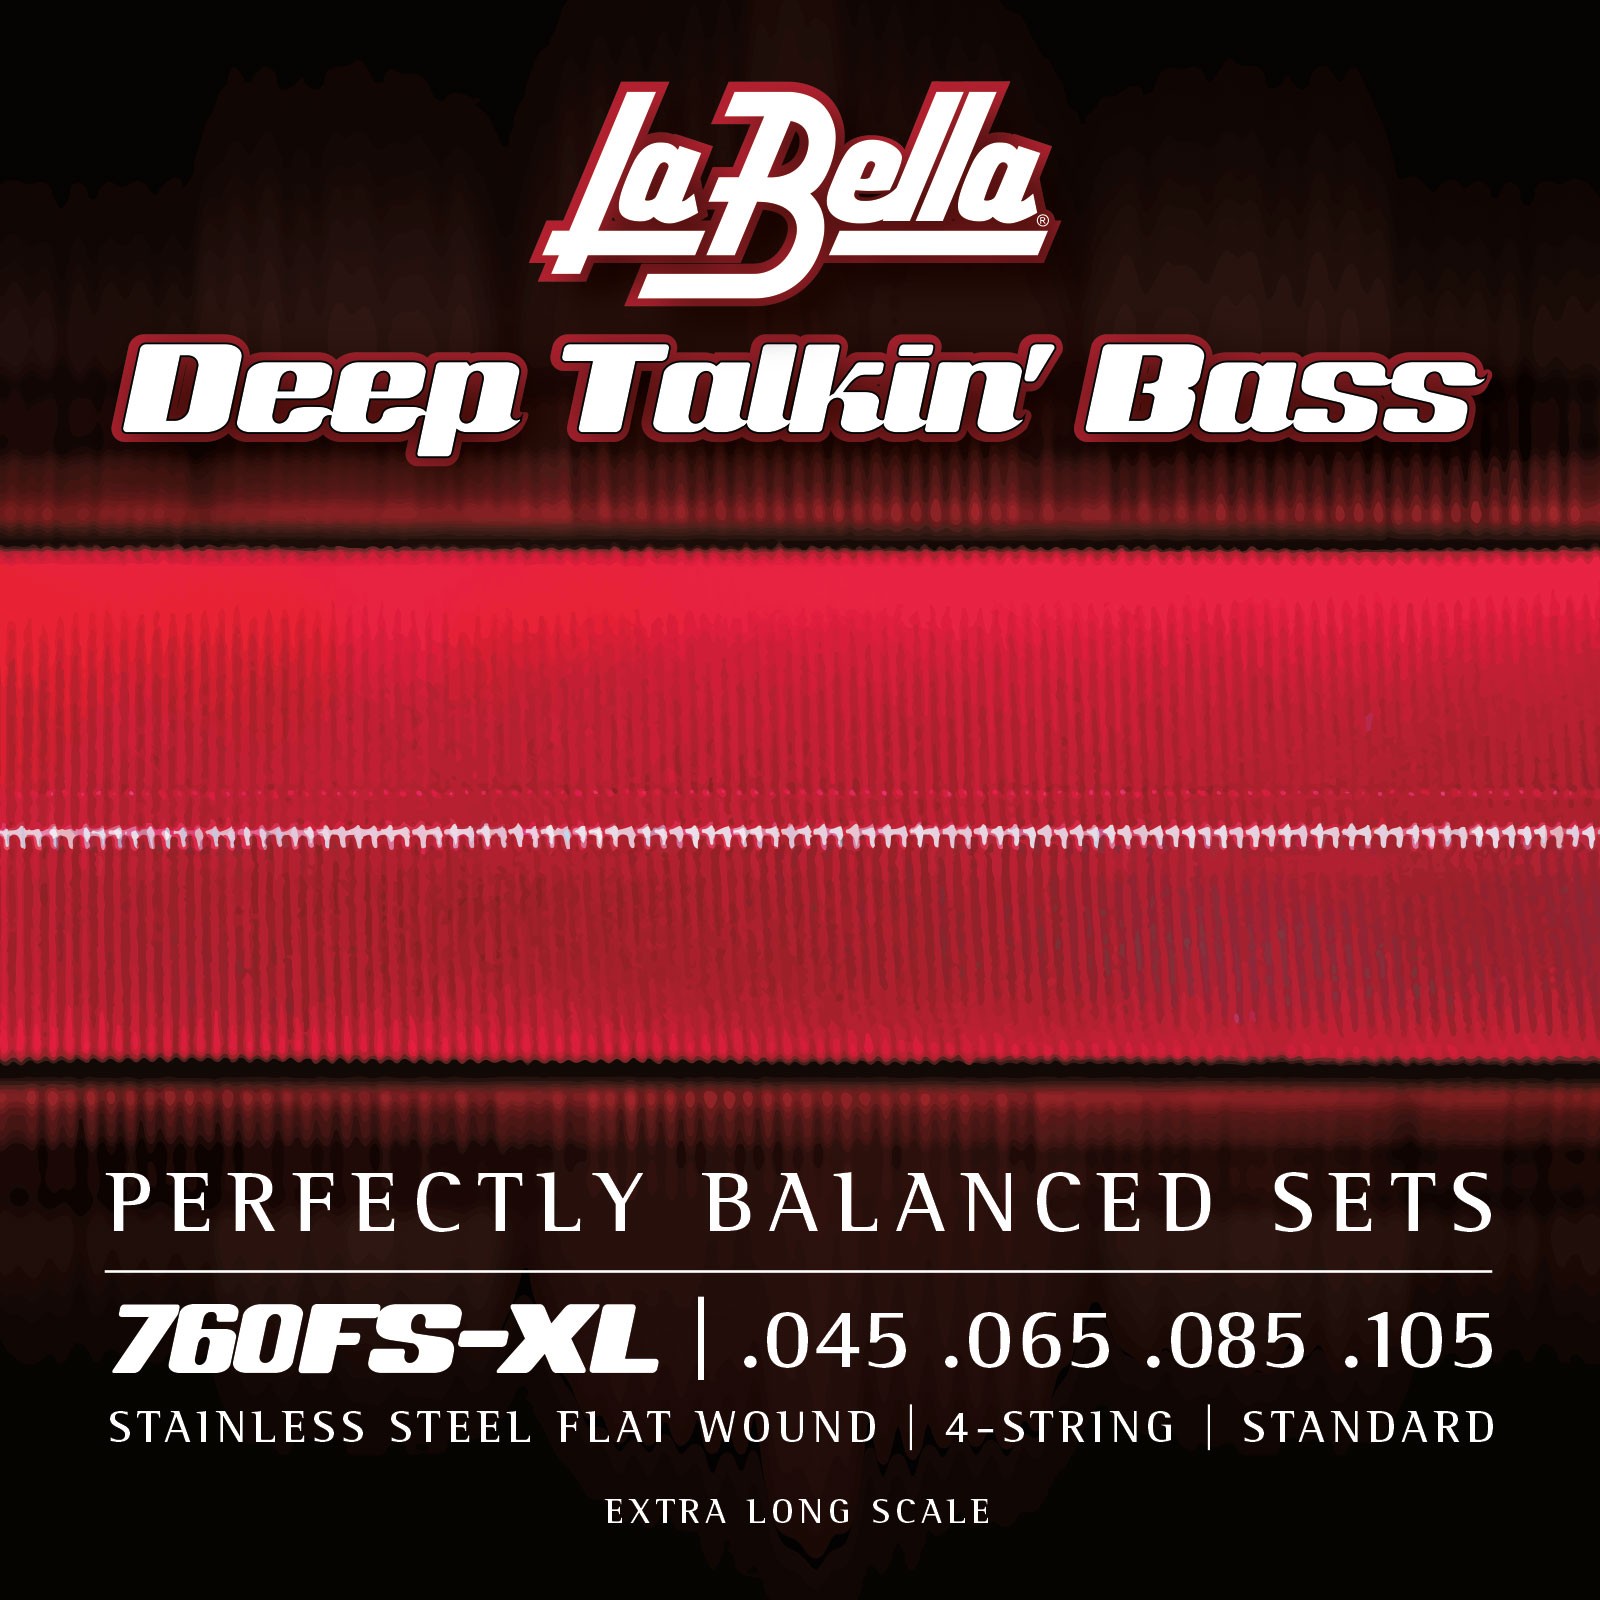 LA BELLA La Bella Stainless Steel Flat Wound | Muta di corde lisce per basso 4 corde a scala extra lunga 760FS-XL